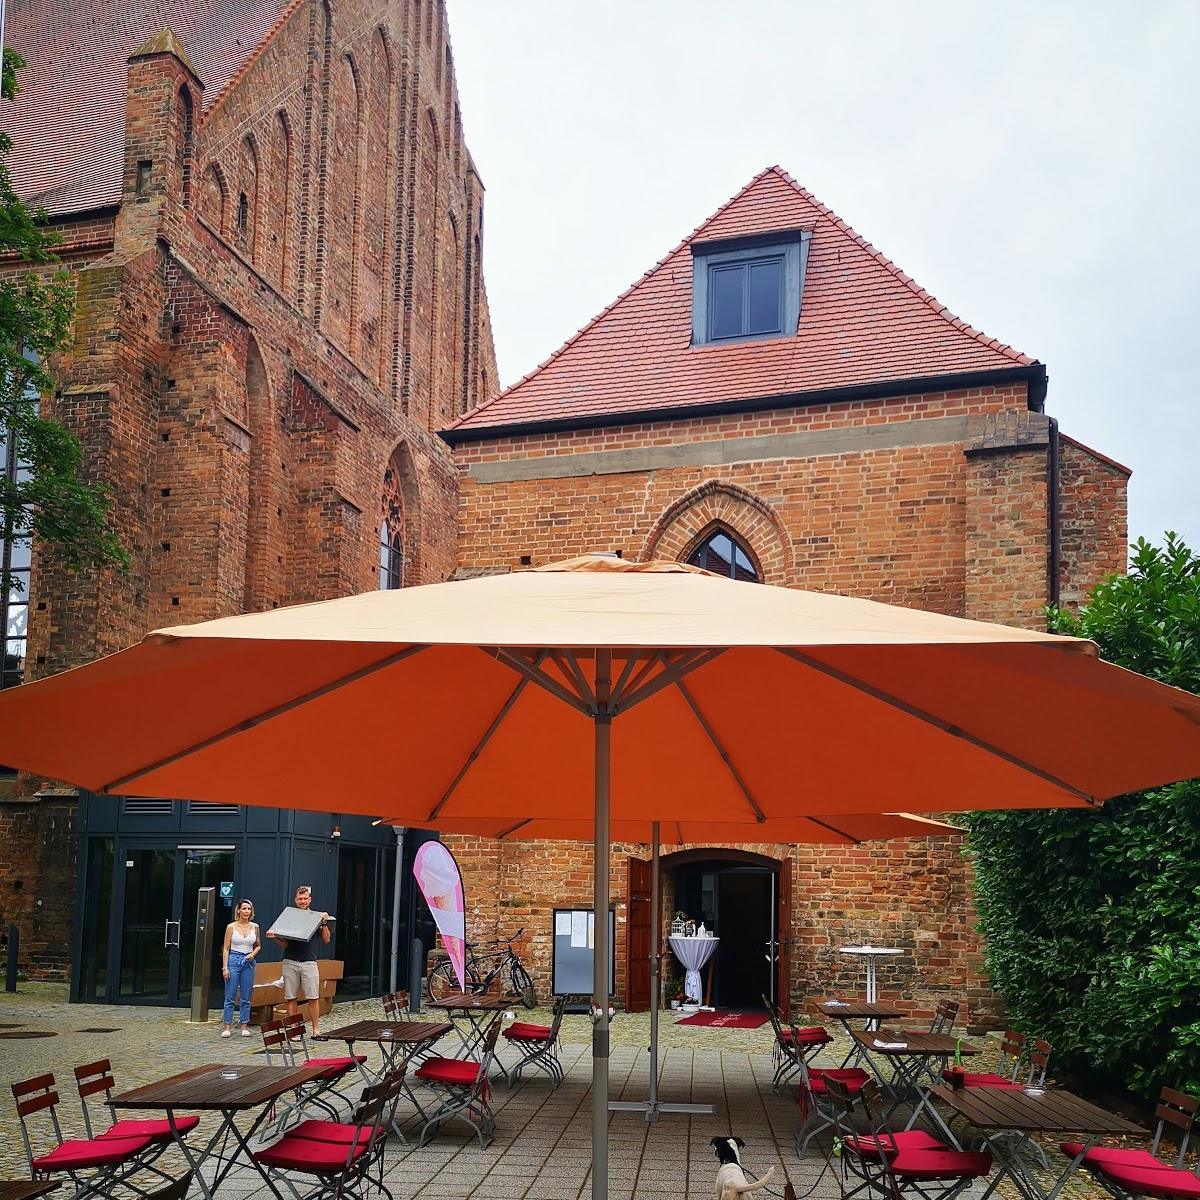 Restaurant "Café Pauline" in Brandenburg an der Havel